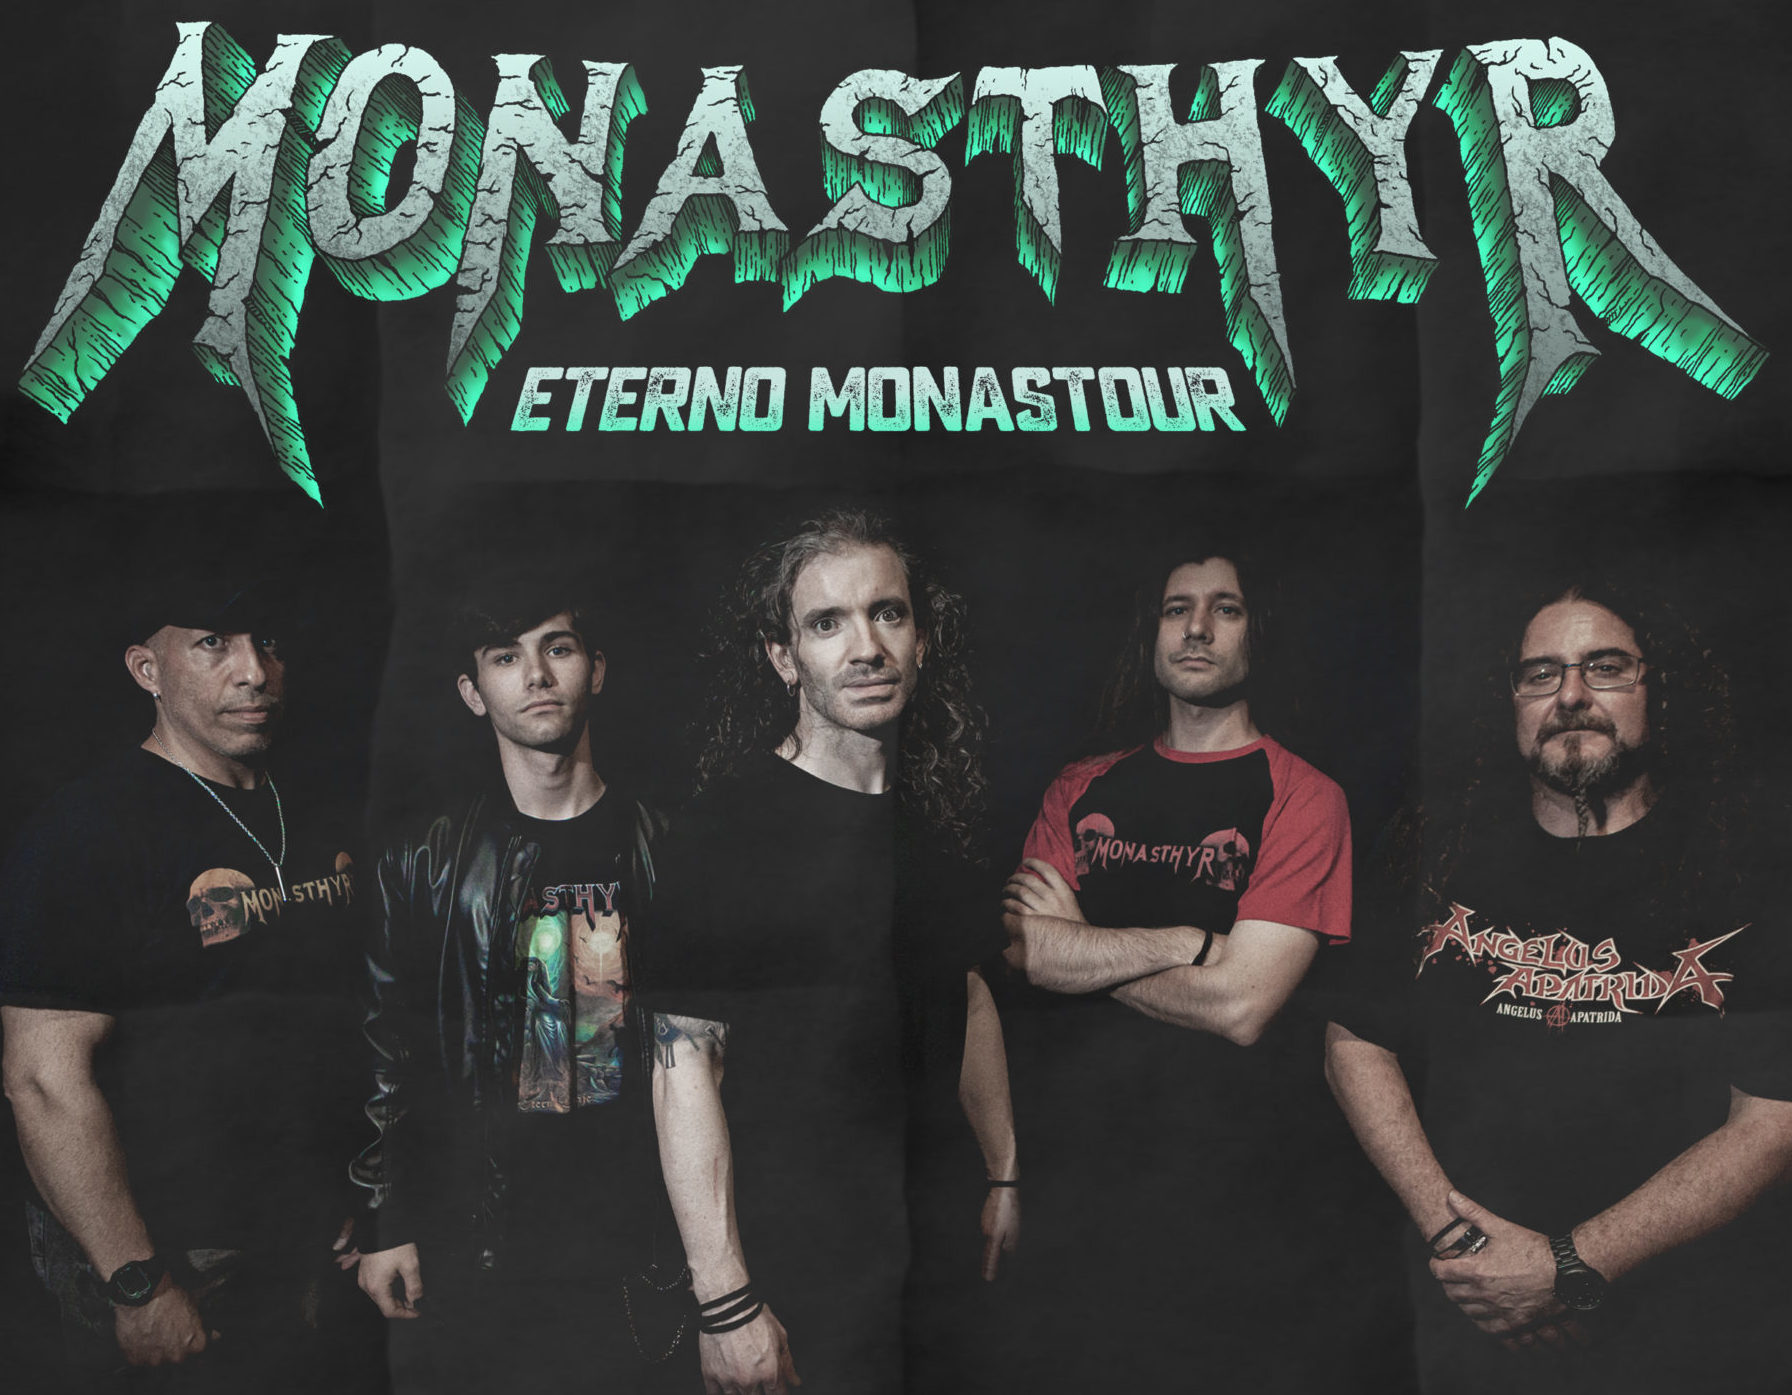 Monasthyr estarán actuando este fin de semana en Valladolid y Zaragoza